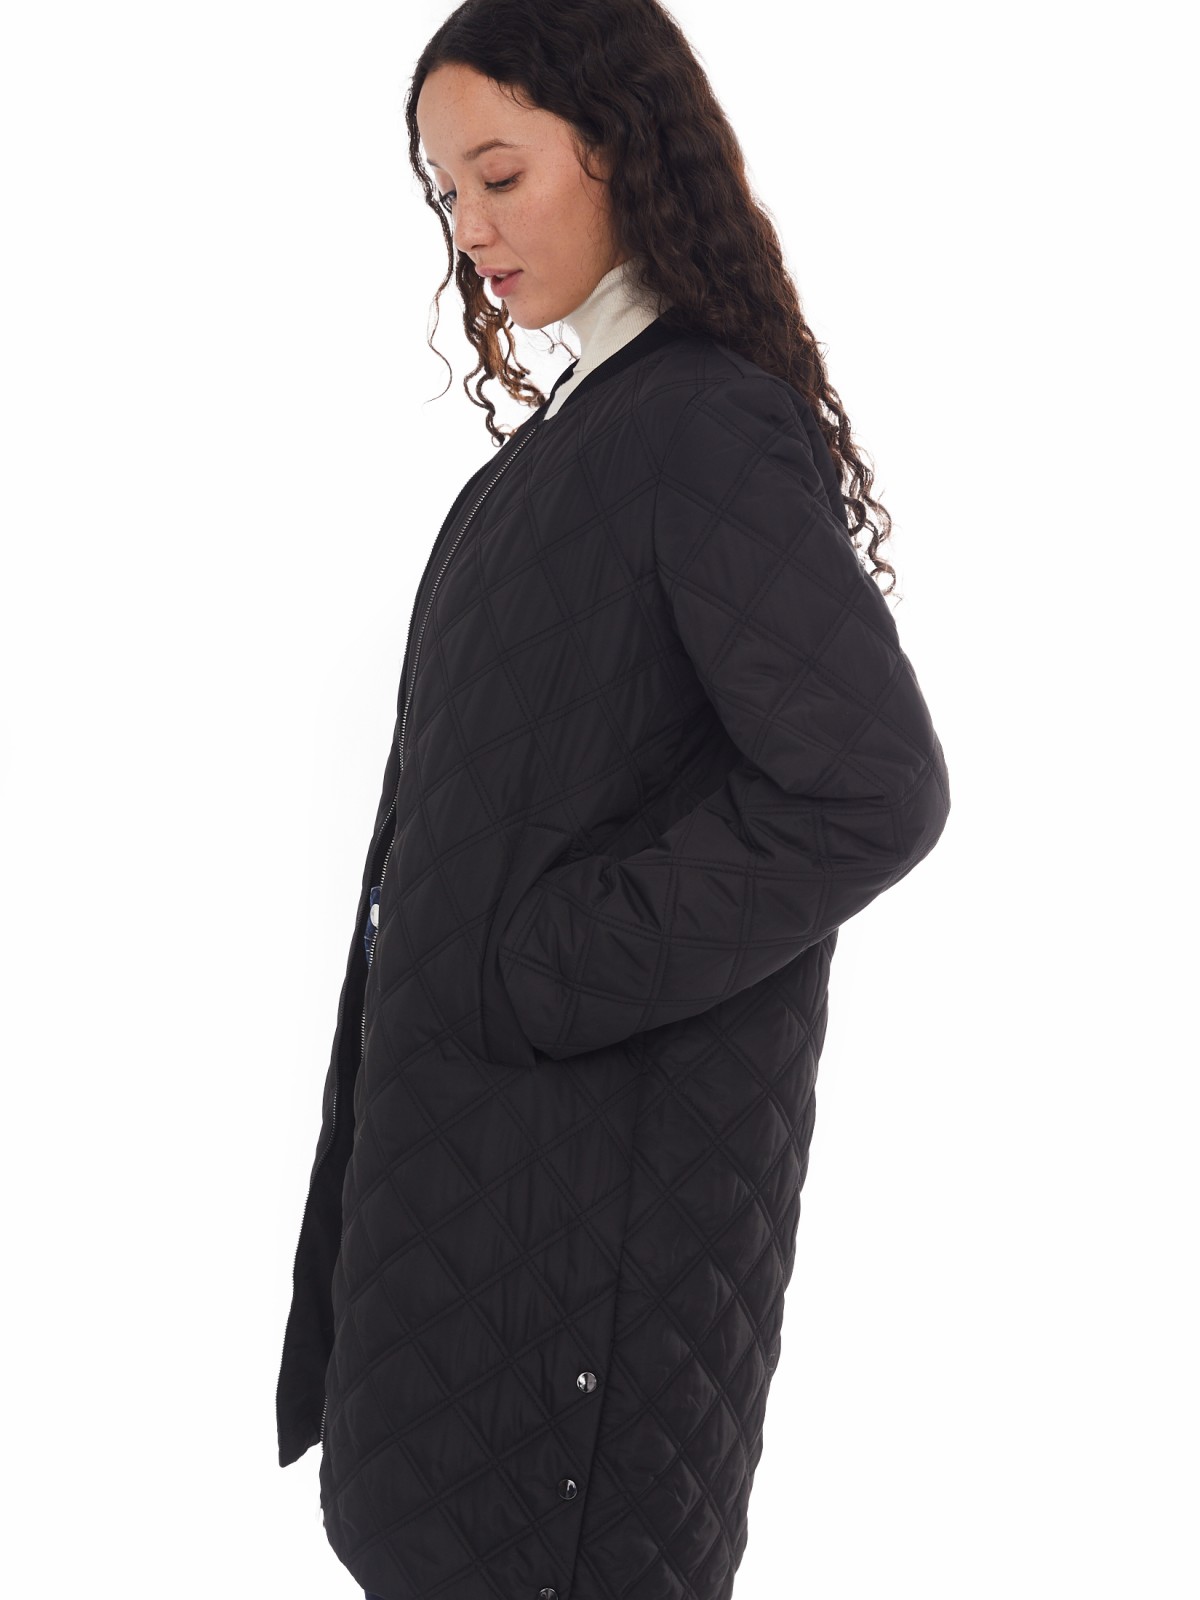 Утеплённое стёганое пальто-бомбер на синтепоне zolla 024125250044, цвет черный, размер XS - фото 2